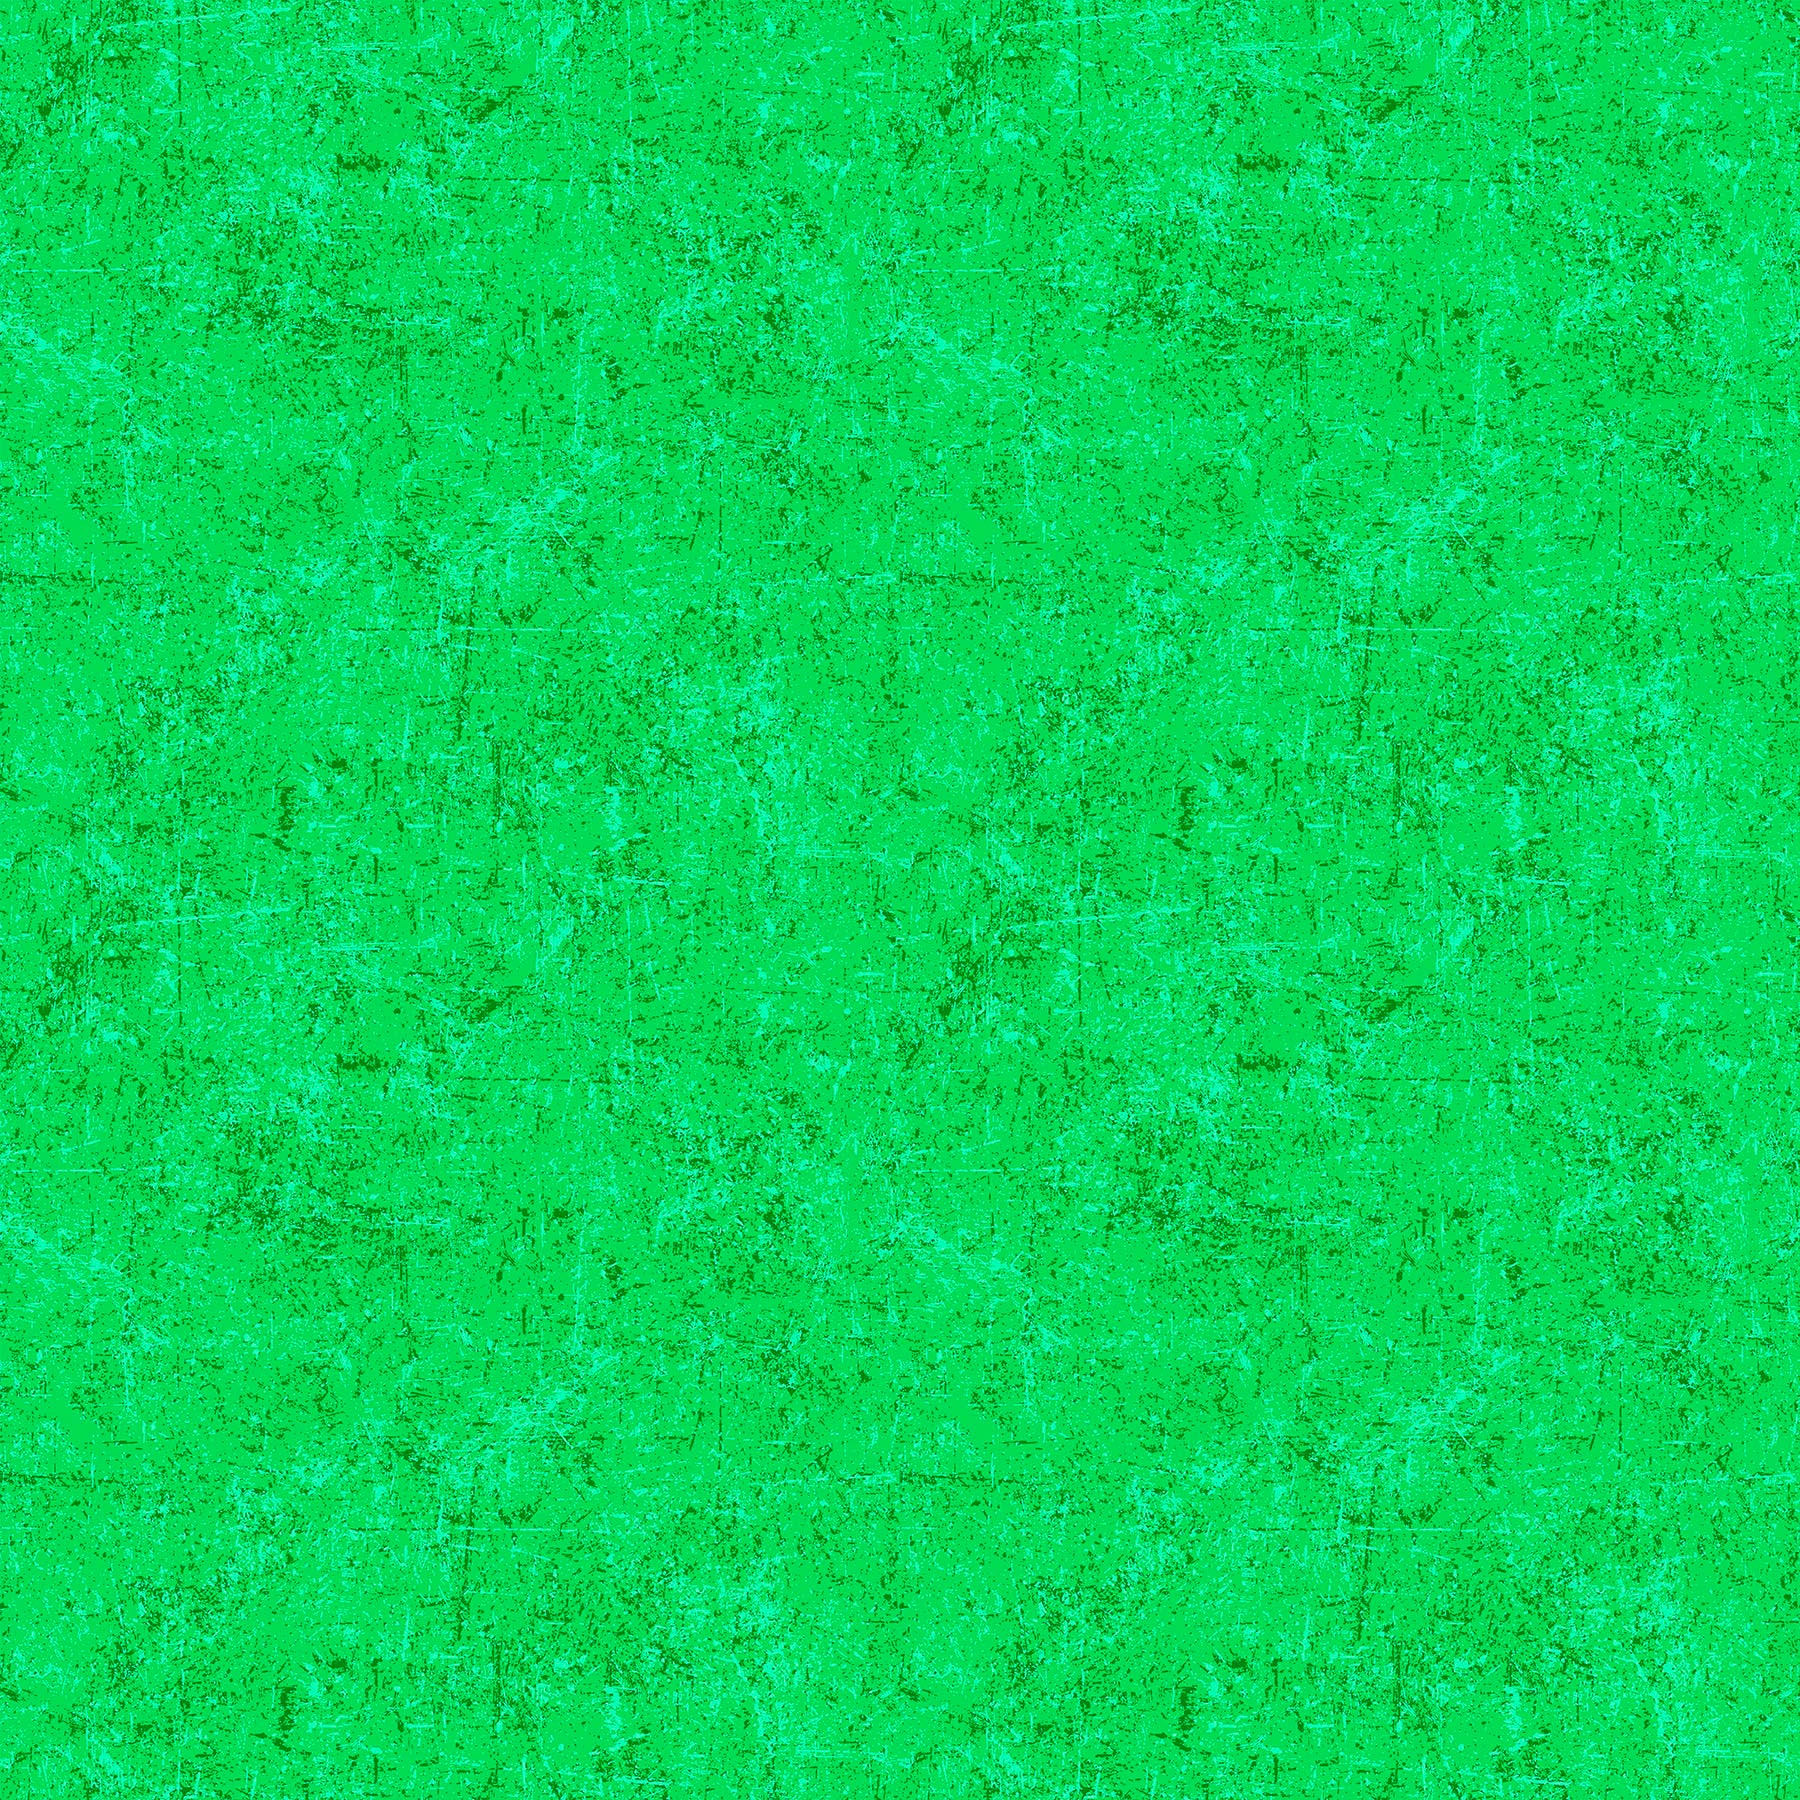 Glisten Quilt Fabric - Blender in Creme de Menthe Green - P10091-72